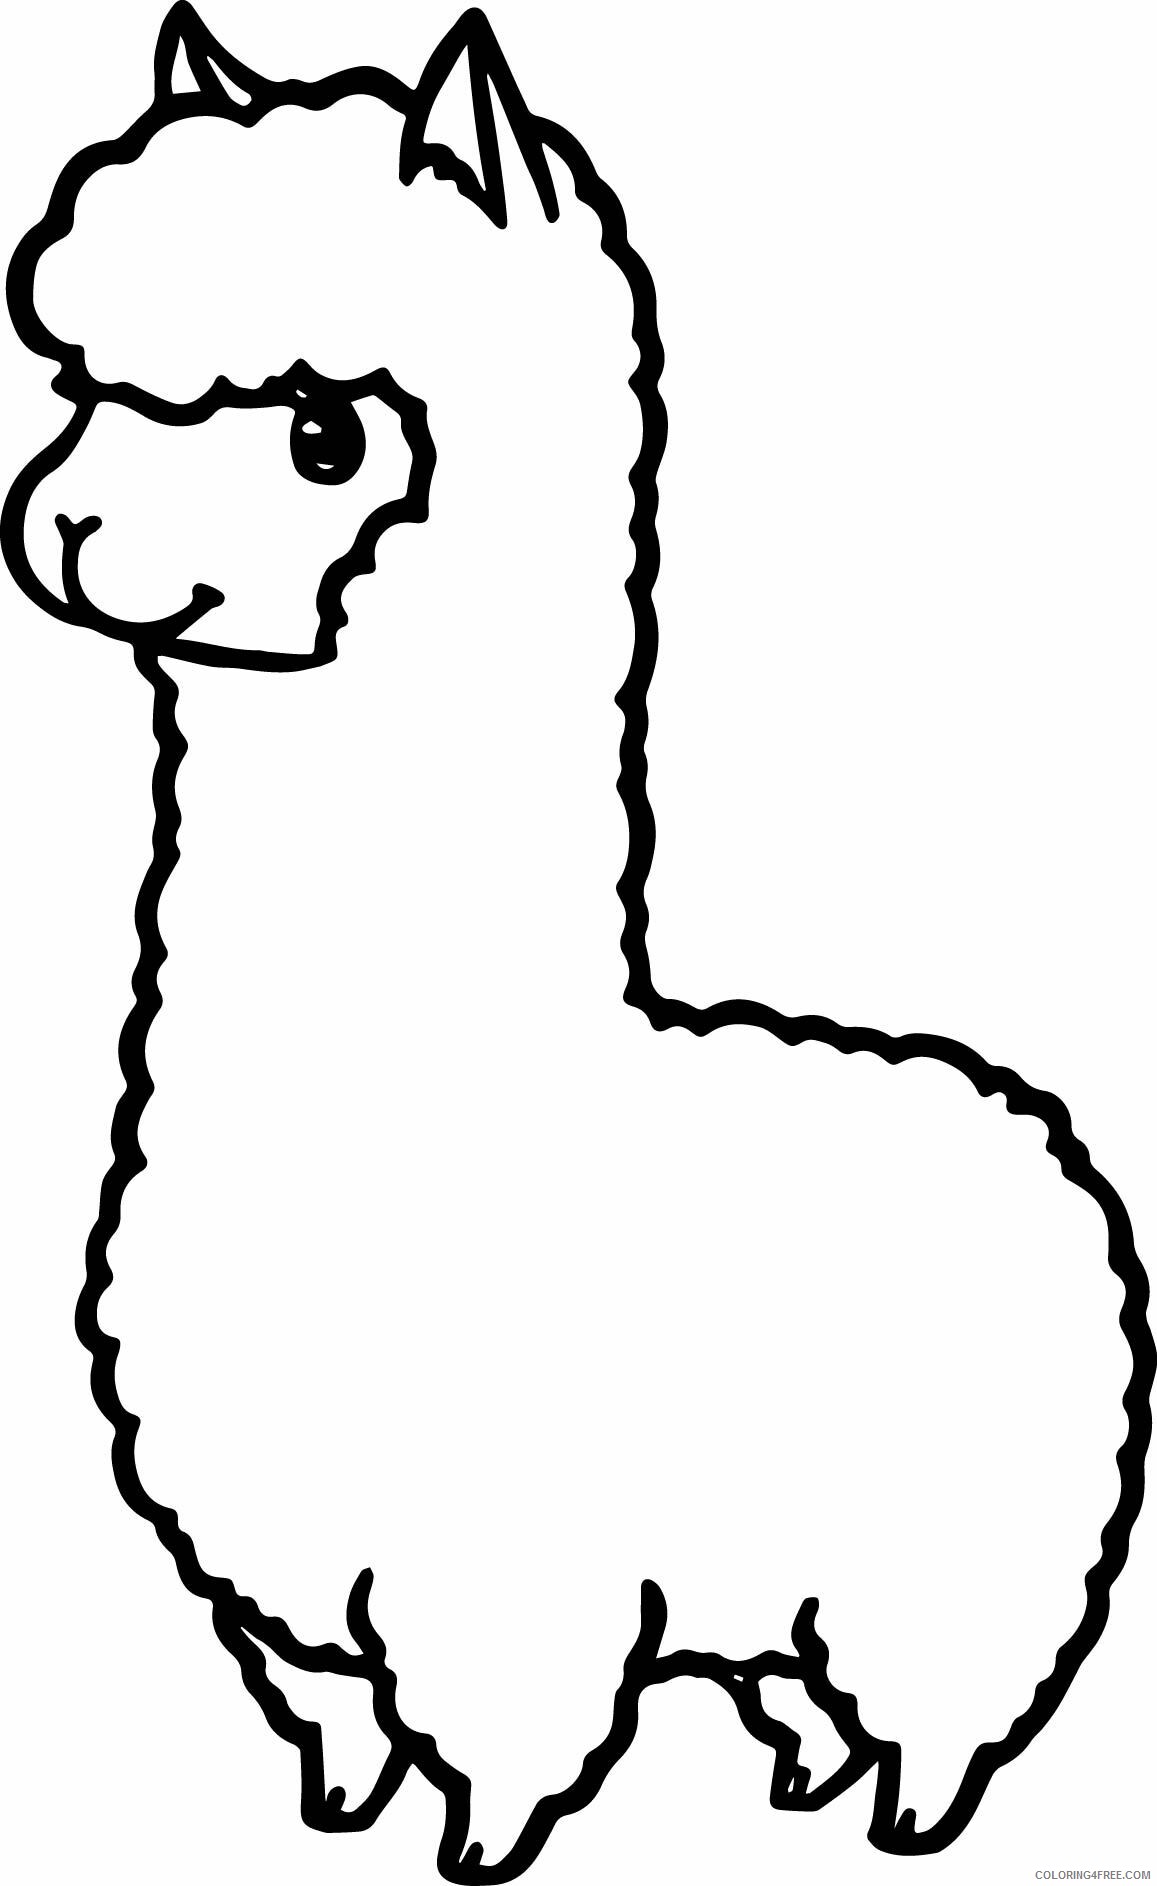 Llama Coloring Pages Animal Printable Sheets Cartoon Llama Drawing 2021 3227 Coloring4free